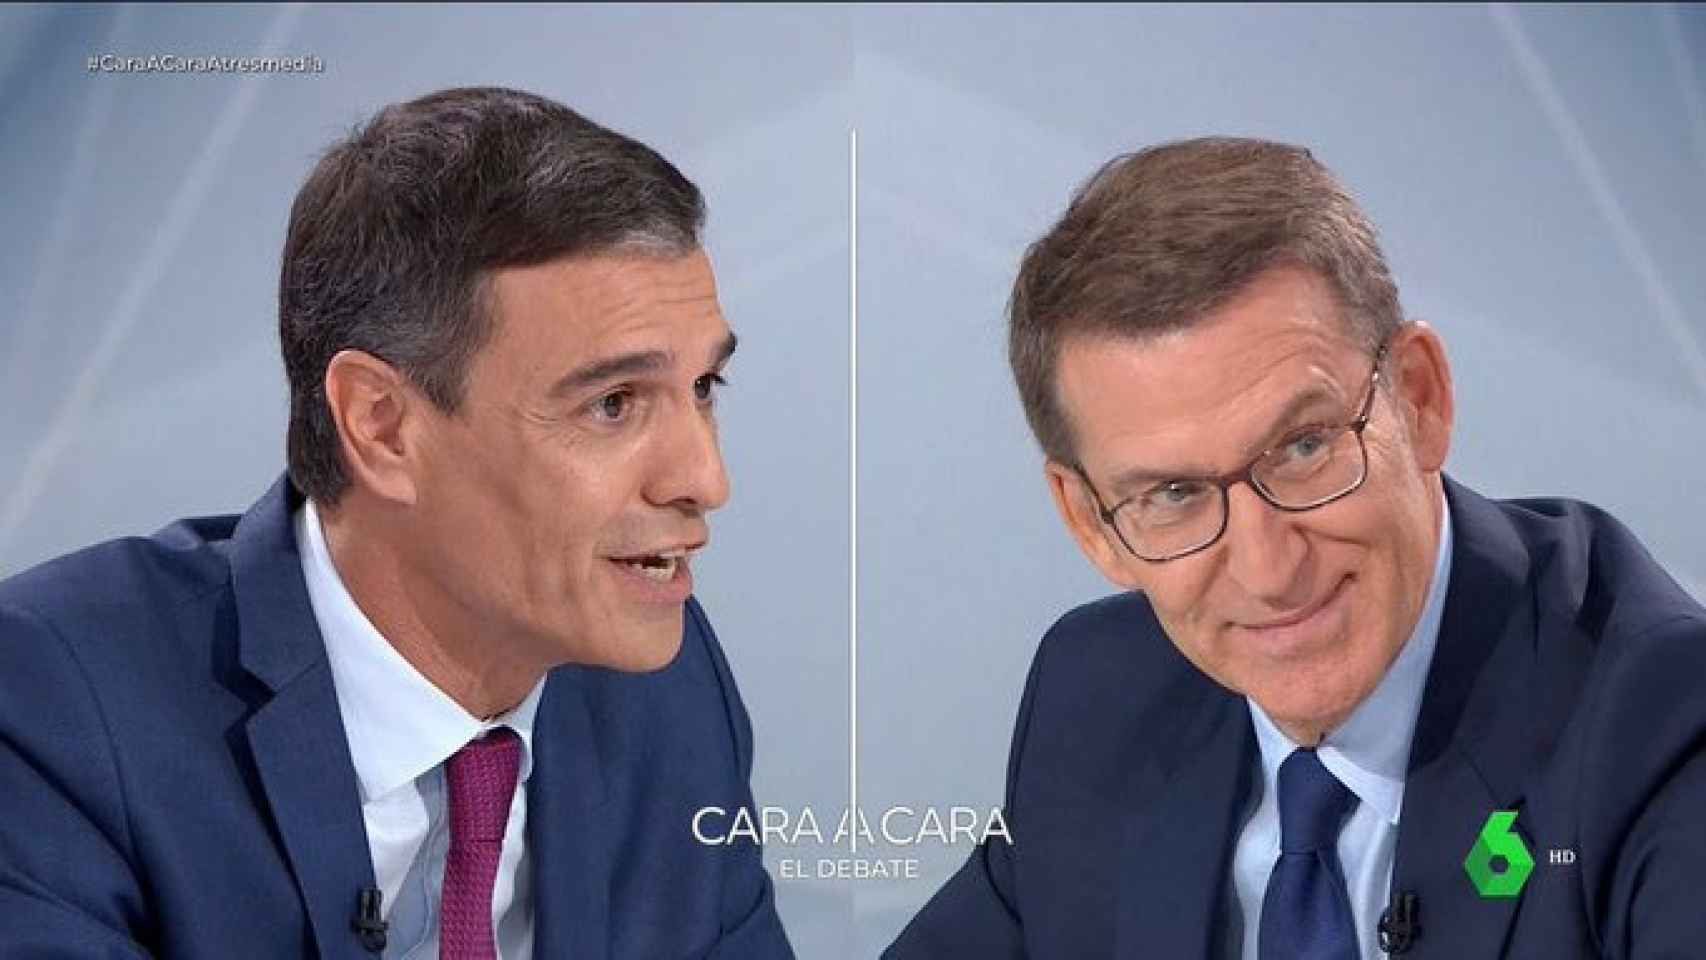 El cara a cara de Pedro Sánchez y Alberto Núñez Feijóo arrasa con un 46,5%  de share en Antena 3 y laSexta